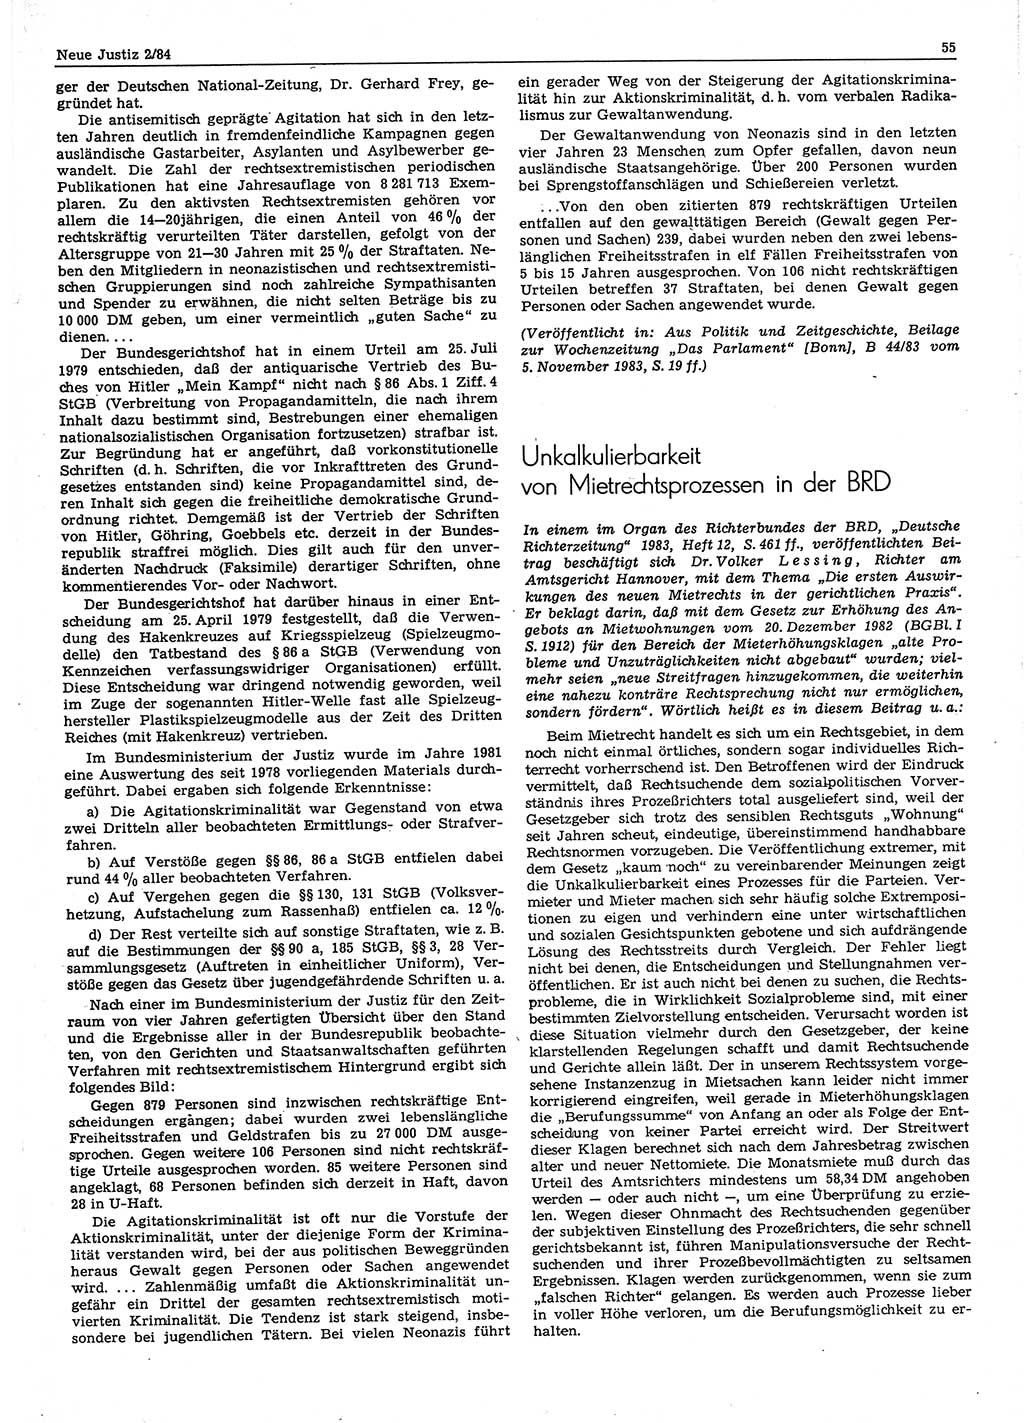 Neue Justiz (NJ), Zeitschrift für sozialistisches Recht und Gesetzlichkeit [Deutsche Demokratische Republik (DDR)], 38. Jahrgang 1984, Seite 55 (NJ DDR 1984, S. 55)